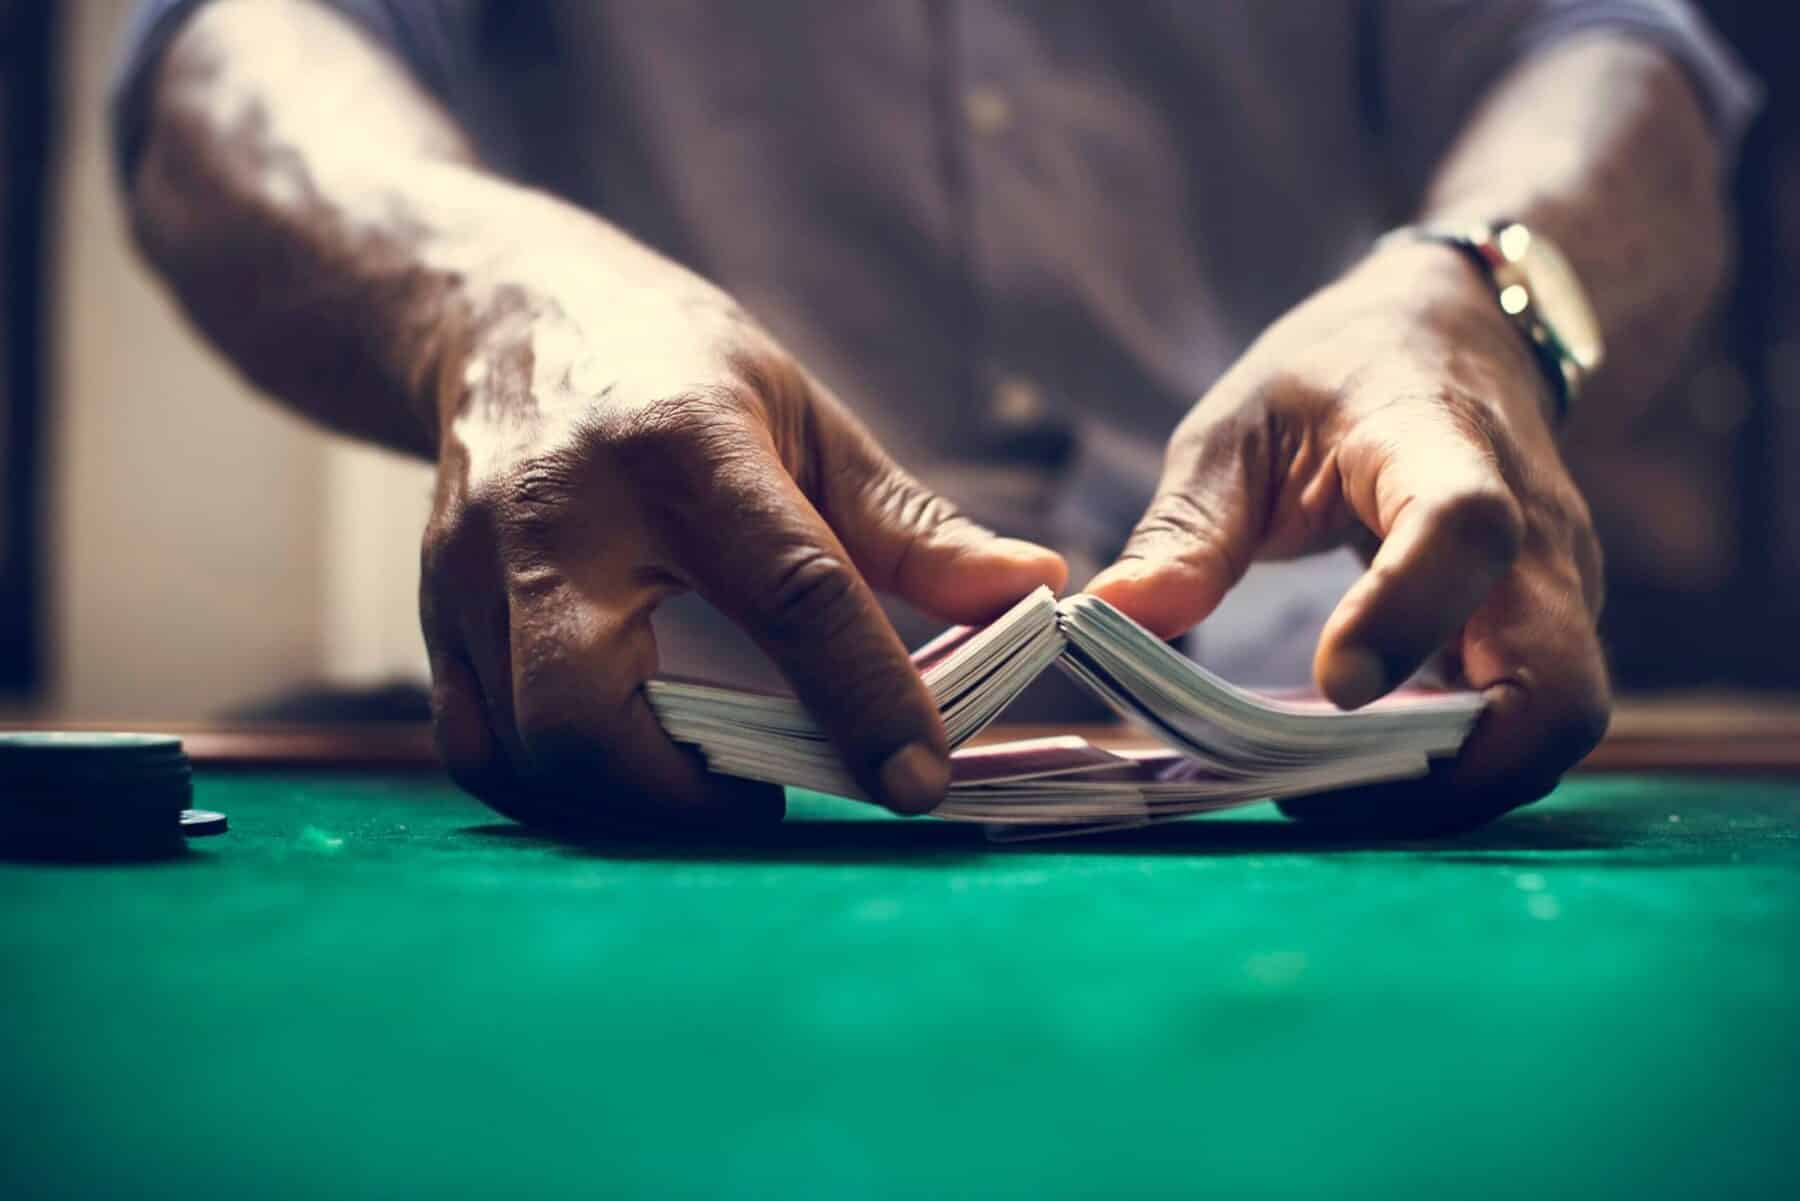 A man gambling and shuffling cards